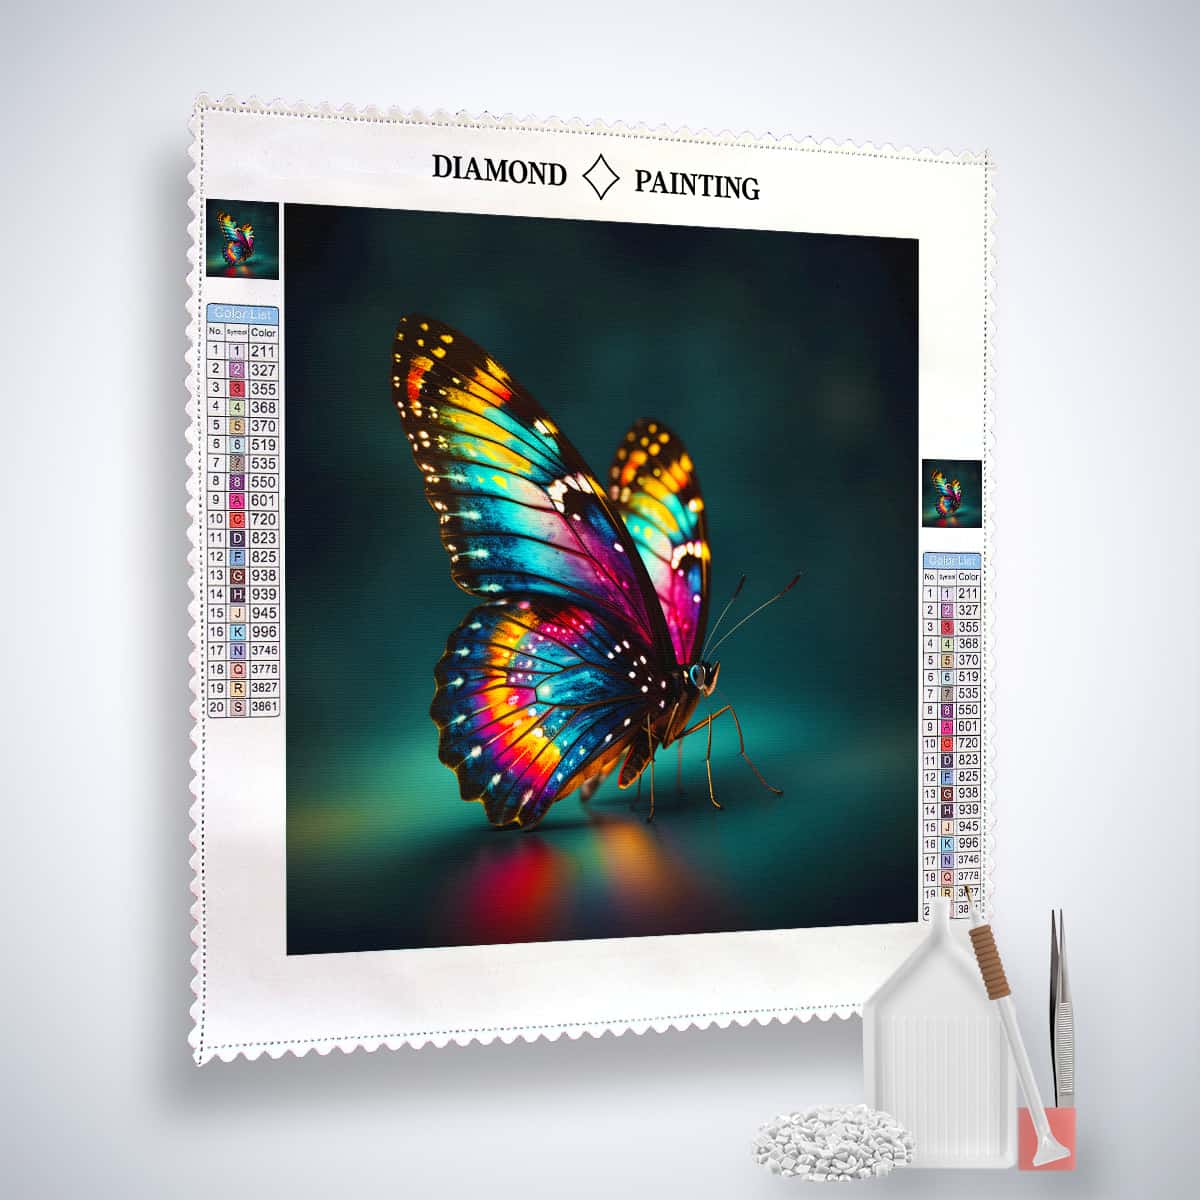 AB Diamond Painting - Schmetterling sitzend - gedruckt in Ultra-HD - AB Diamond, Neu eingetroffen, Quadratisch, Schmetterling, Tiere